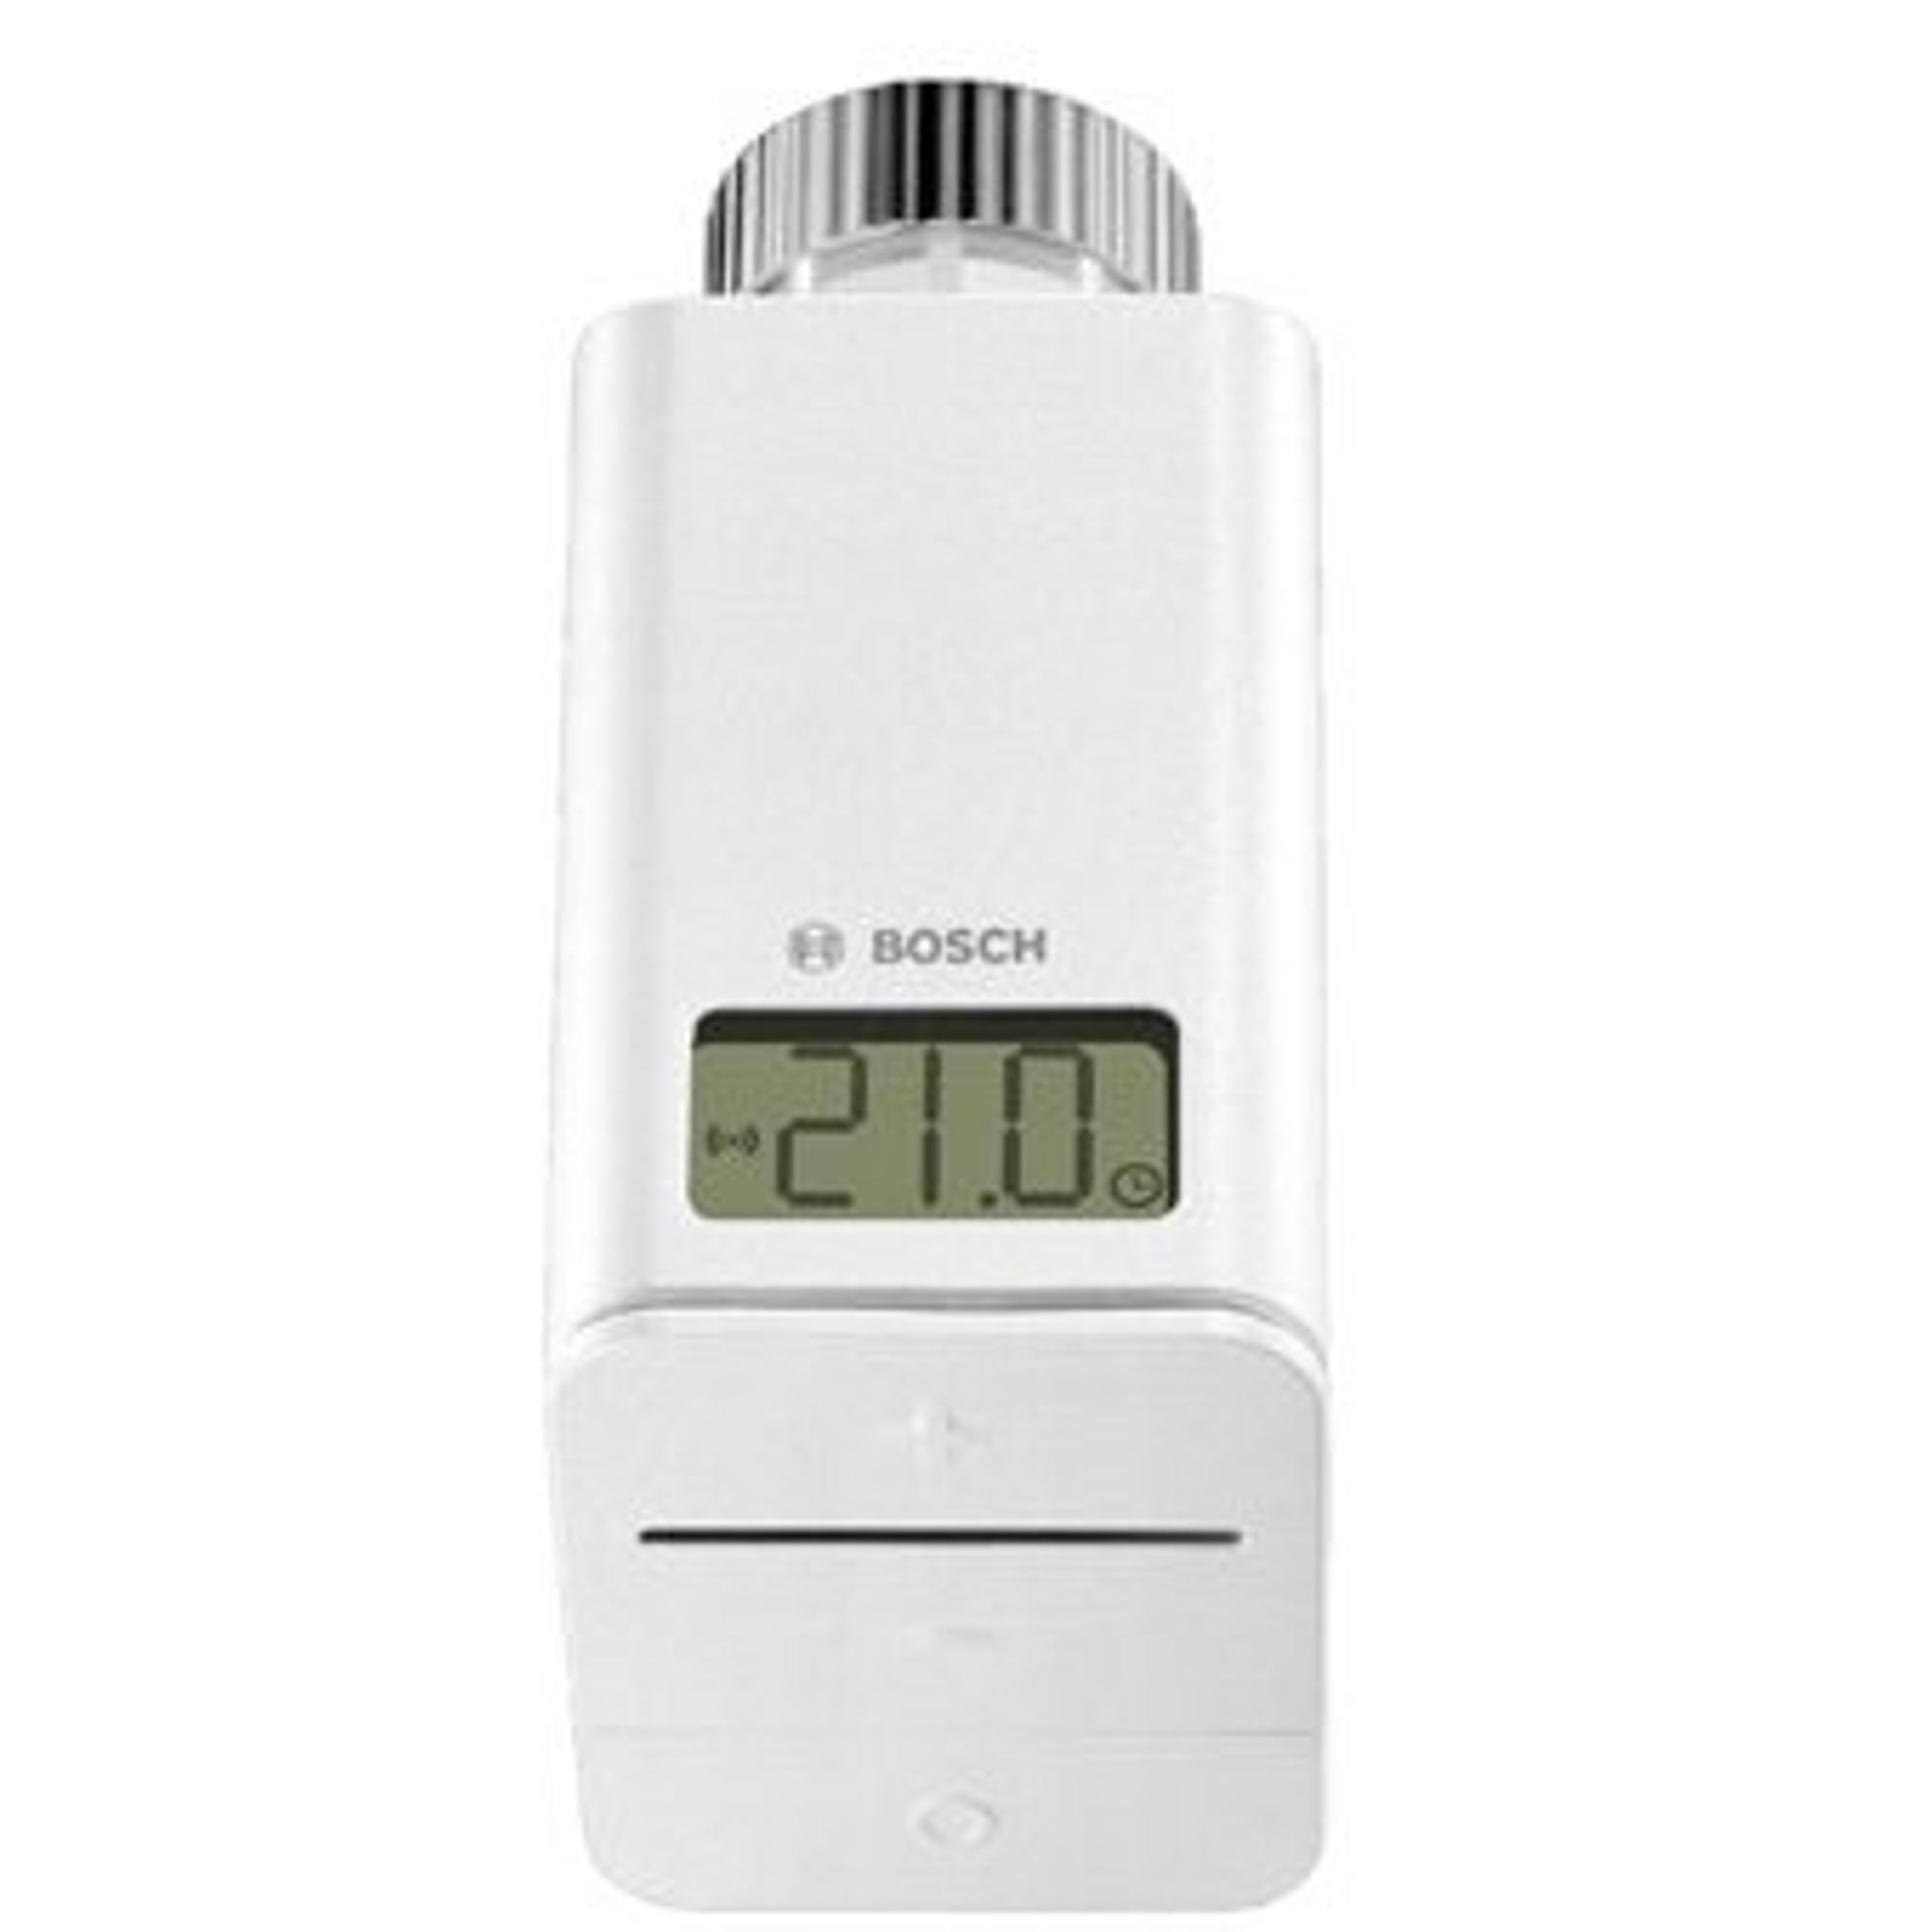 Bosch Easycontrol tête de thermostat de radiateur intelligent sans fil  droit - 7736701574 